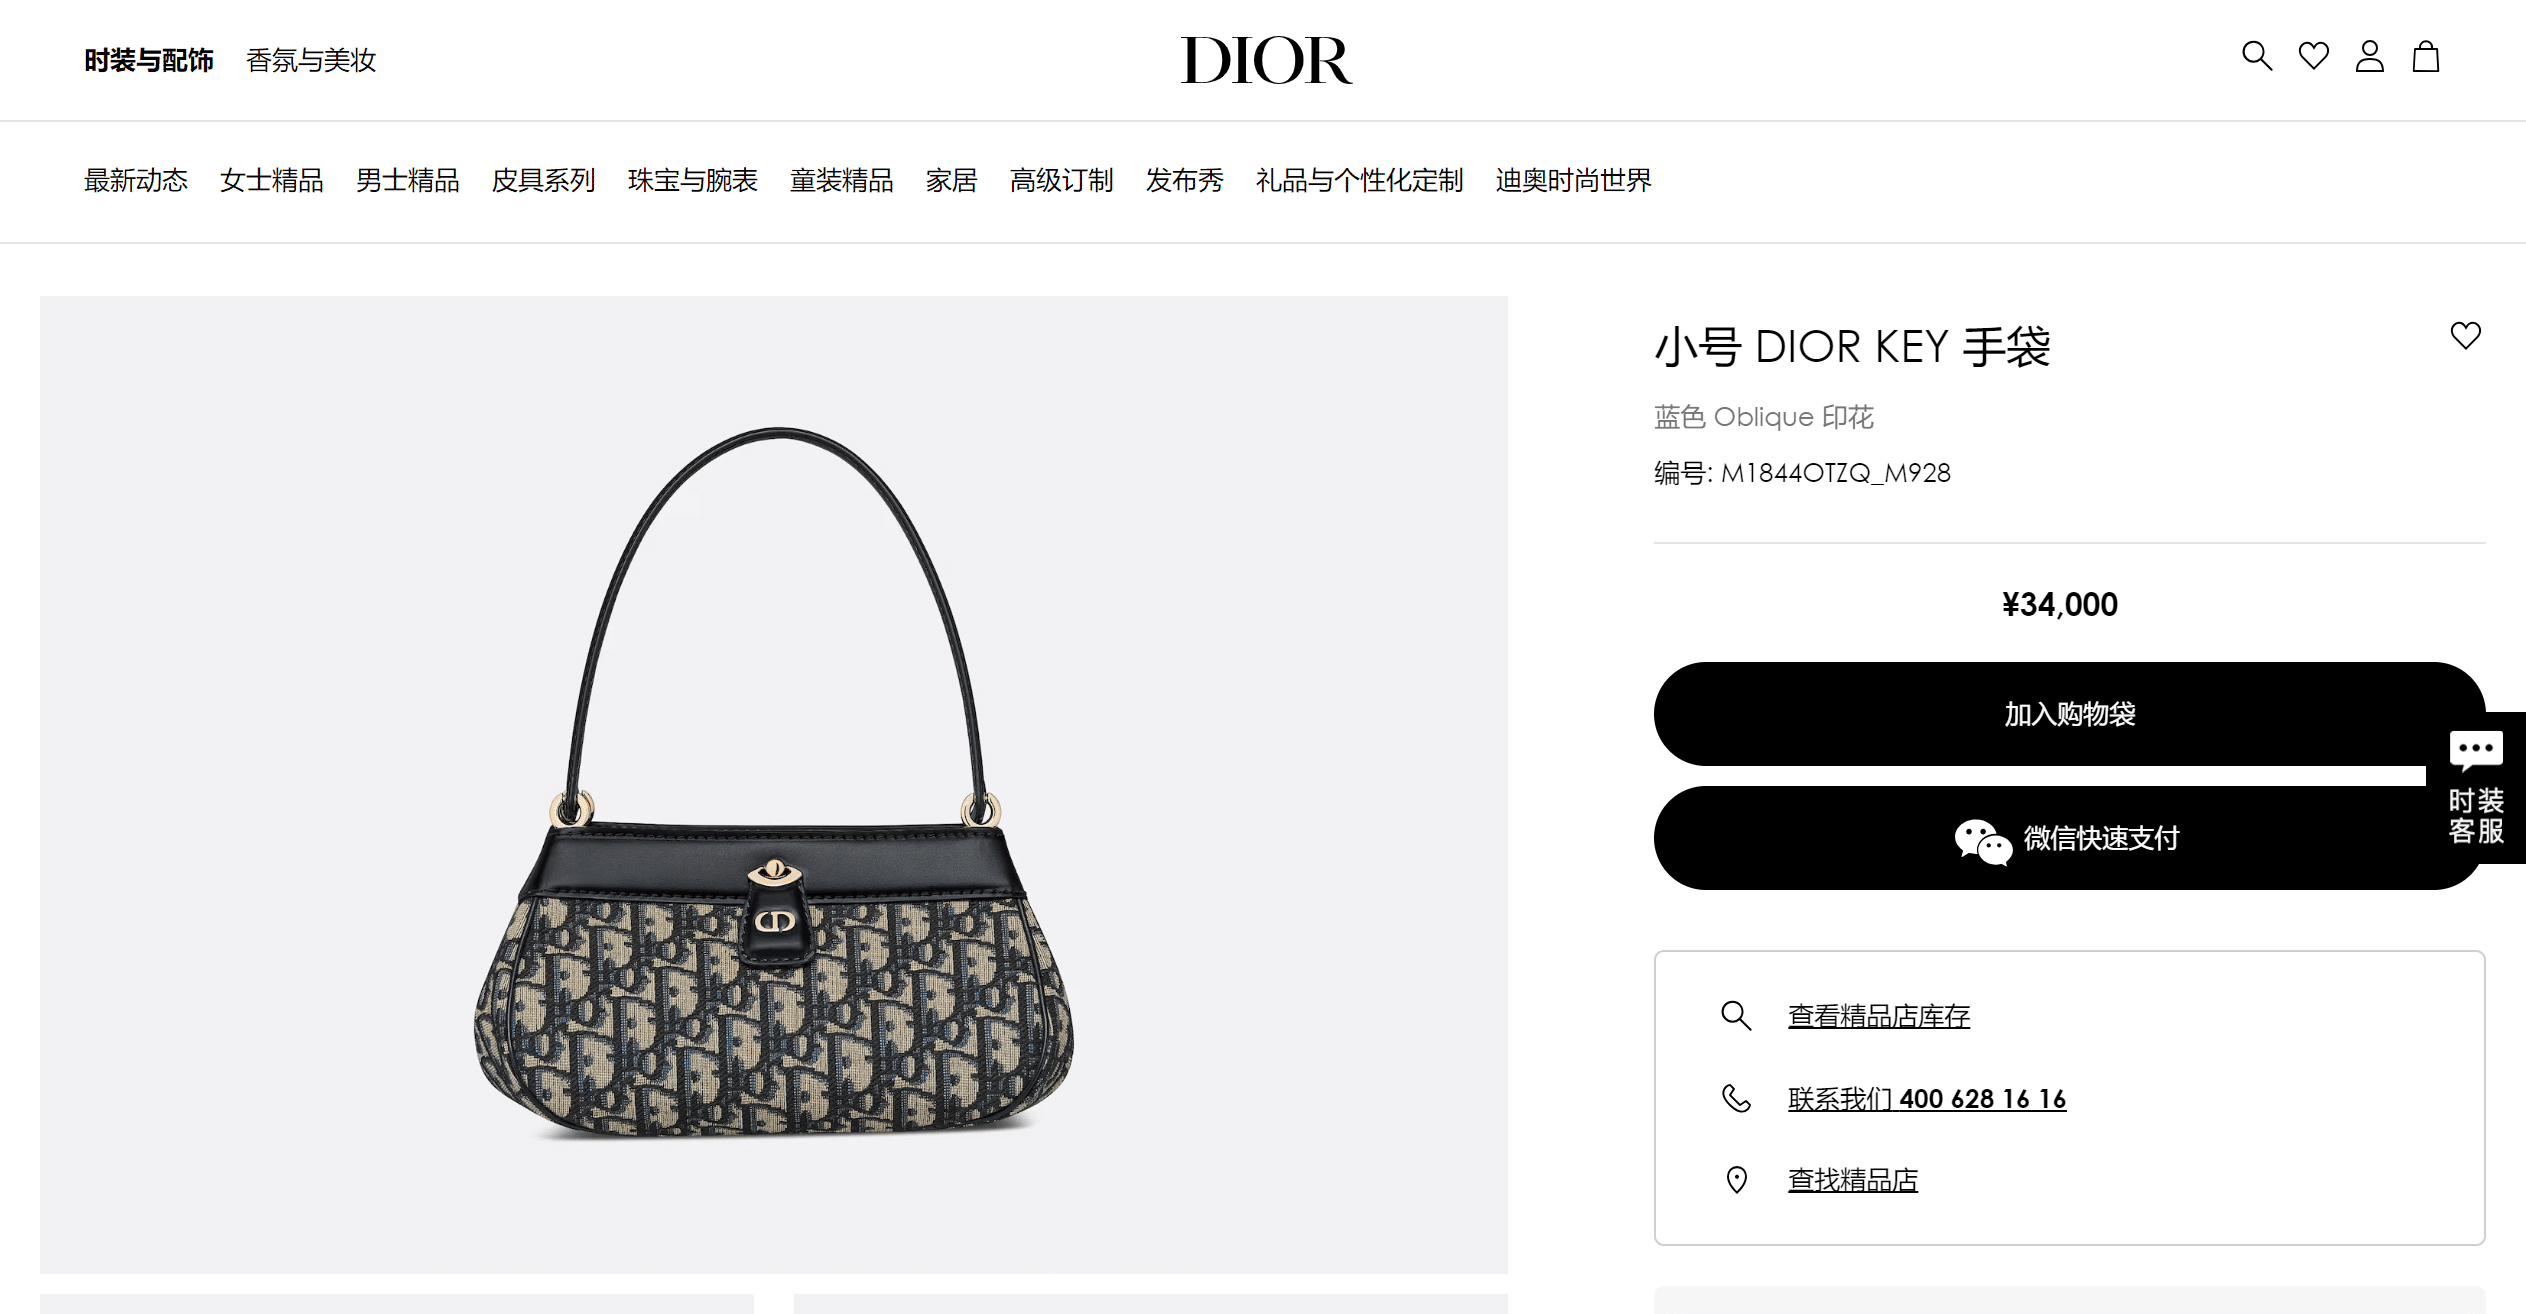 -Dior-Key---Oblique--DIOR.png